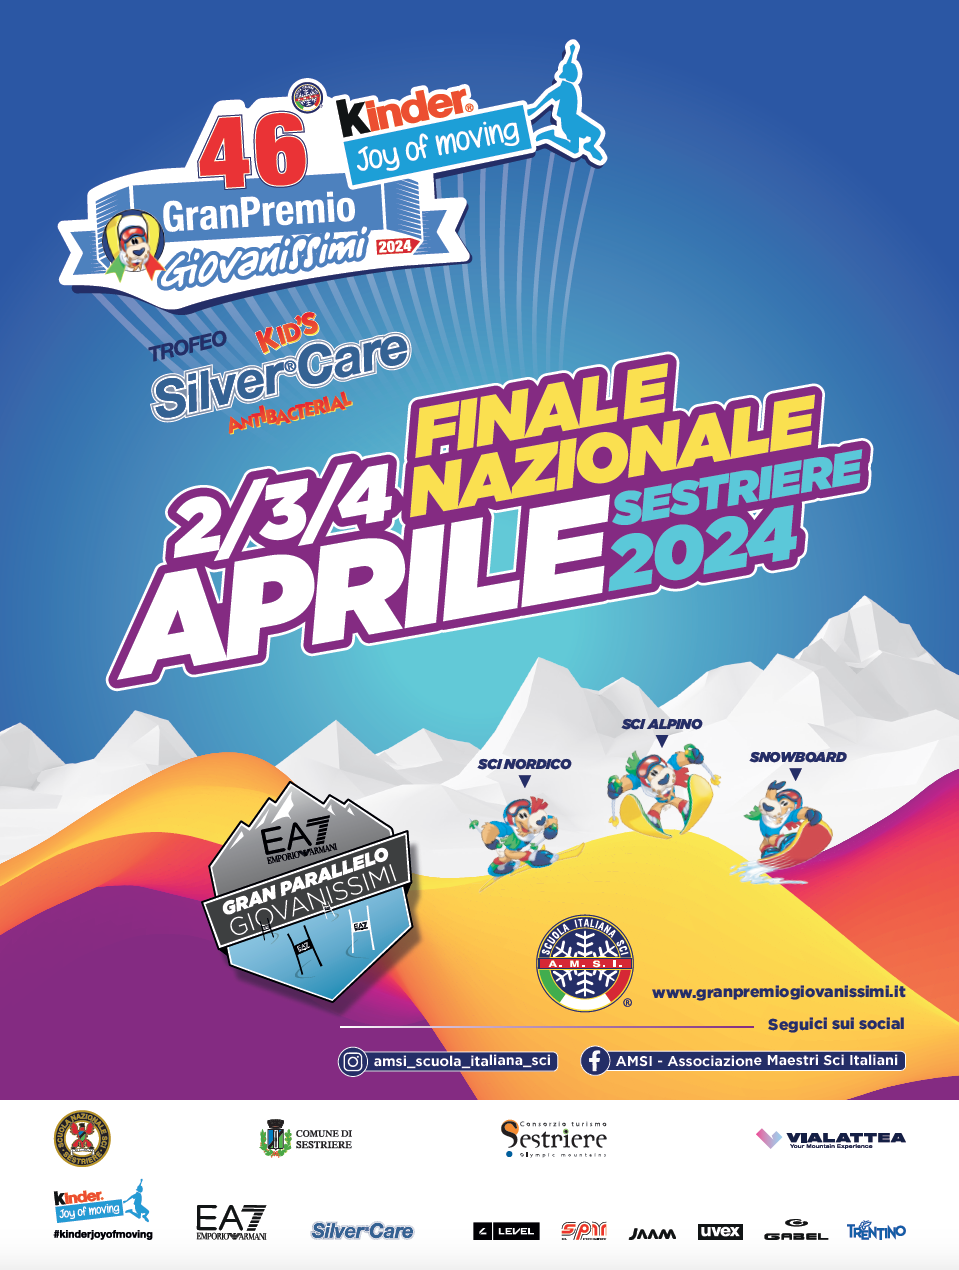 – Scuola Italiana Sci ➡️ Programa Finale Nazionale 46° GranPremio Giovanissimi Kinder joy of Moving – Trofeo Silver®Care